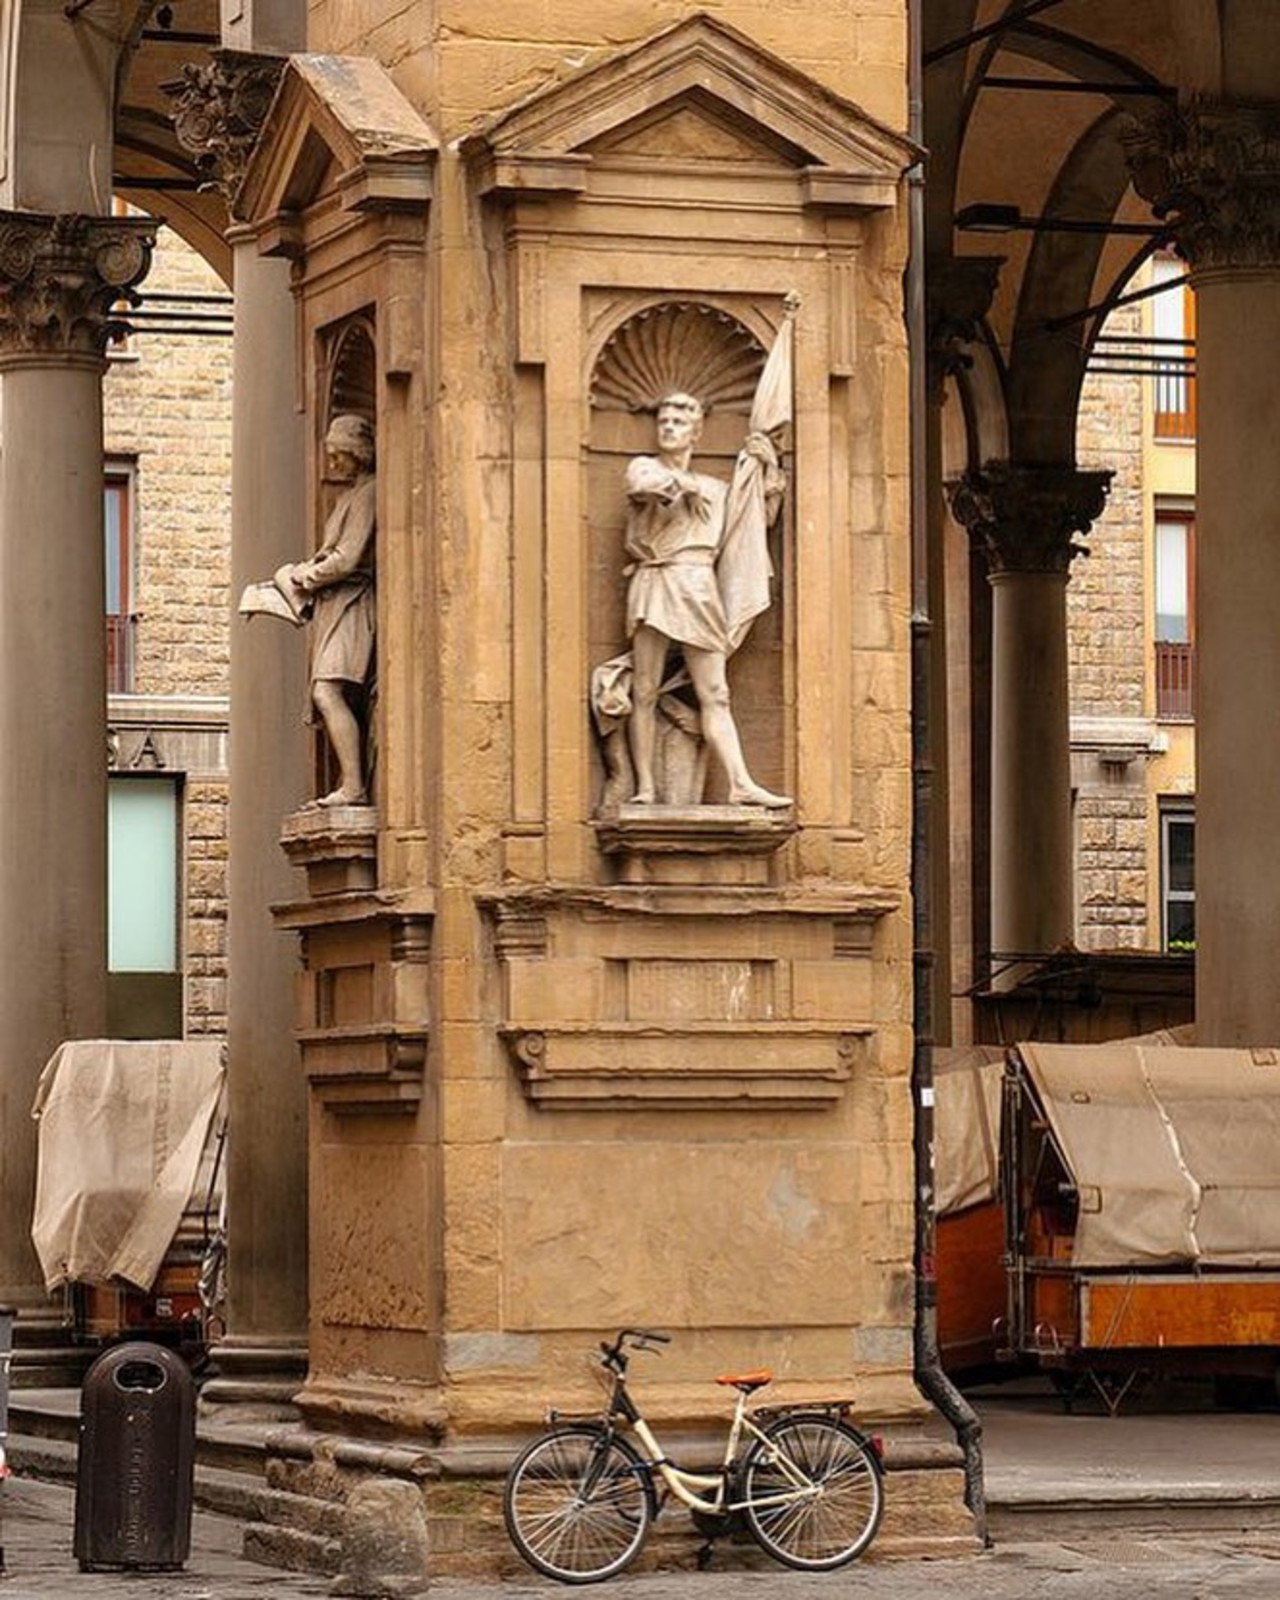 Loggia del Marcato Nuovo, Firenze.
📷 bautisterias flickr

#loggiamercatonuovo #firenze #florence #florença #bicicleta #italia #italy